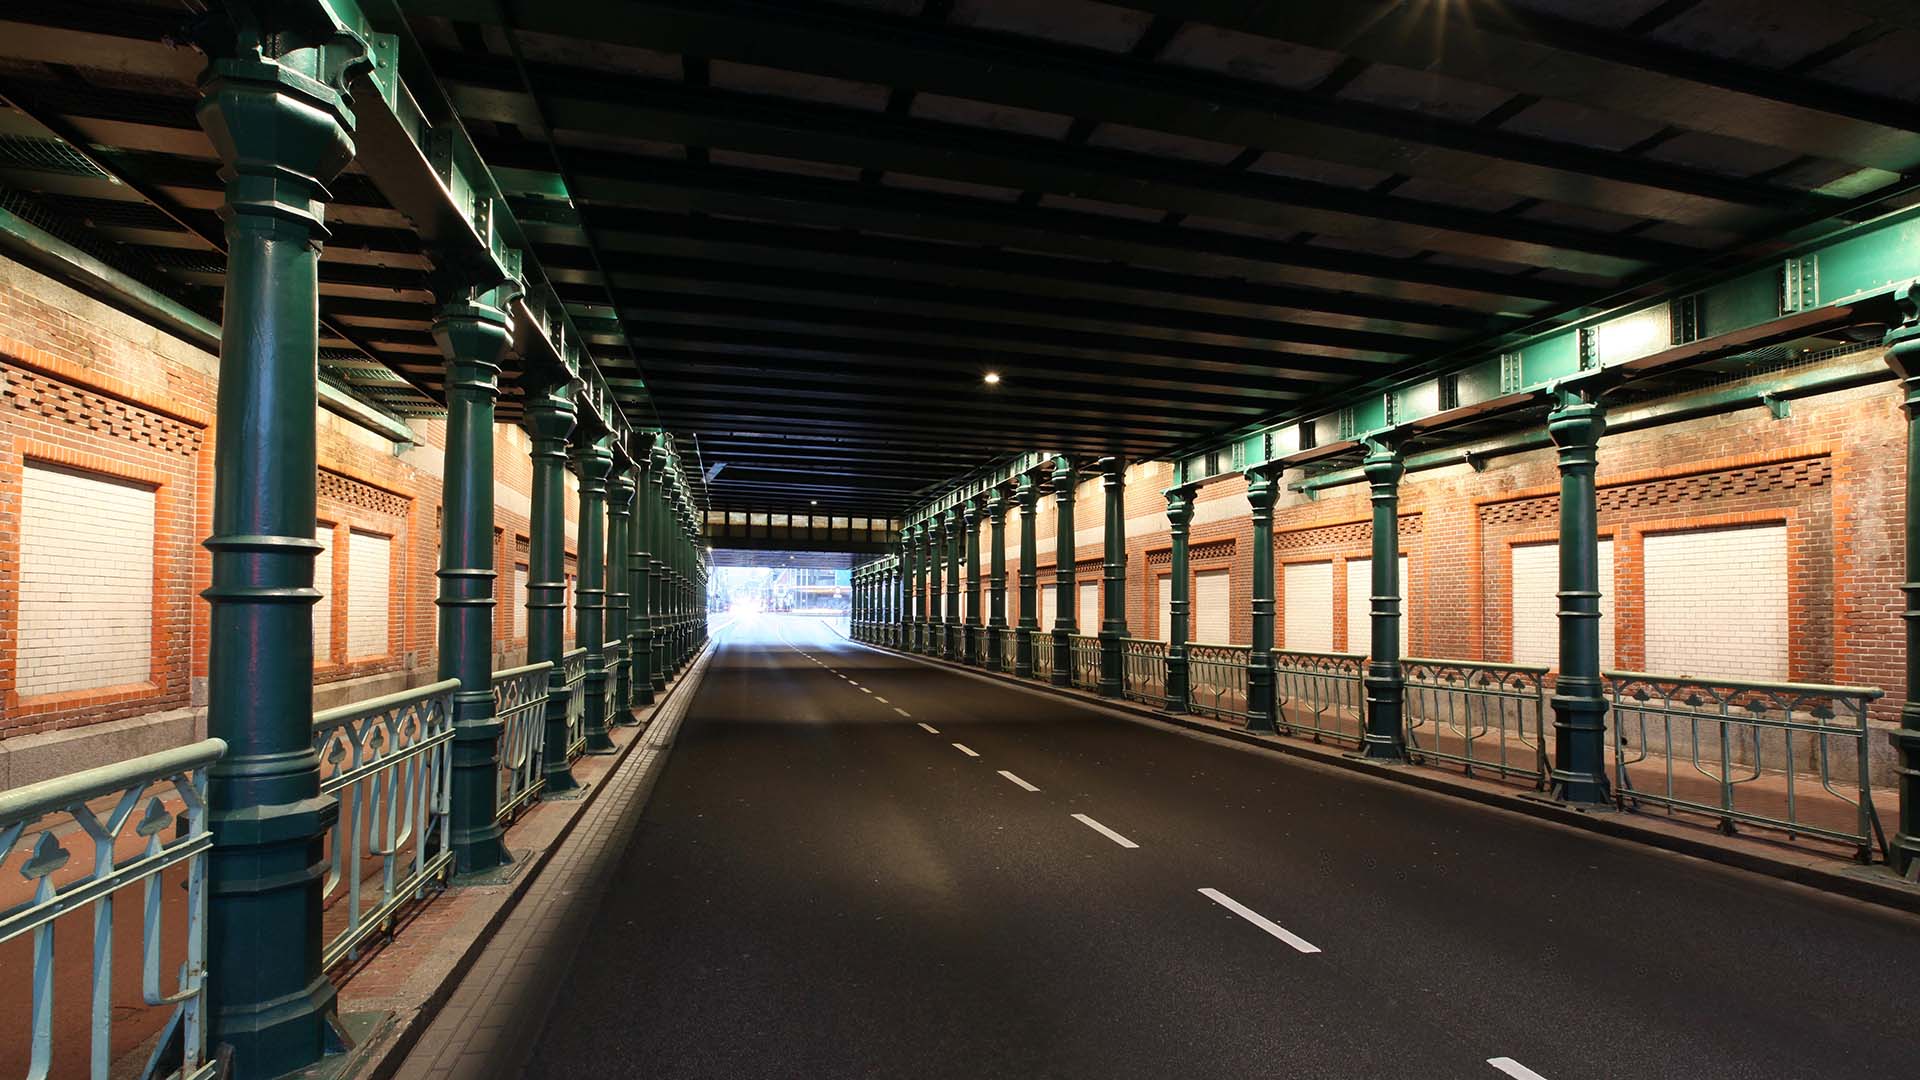 hekwerk, verlichting spoorpassages Haarlem, onderdoorgang spoor, lichtontwerp door IPV Delft